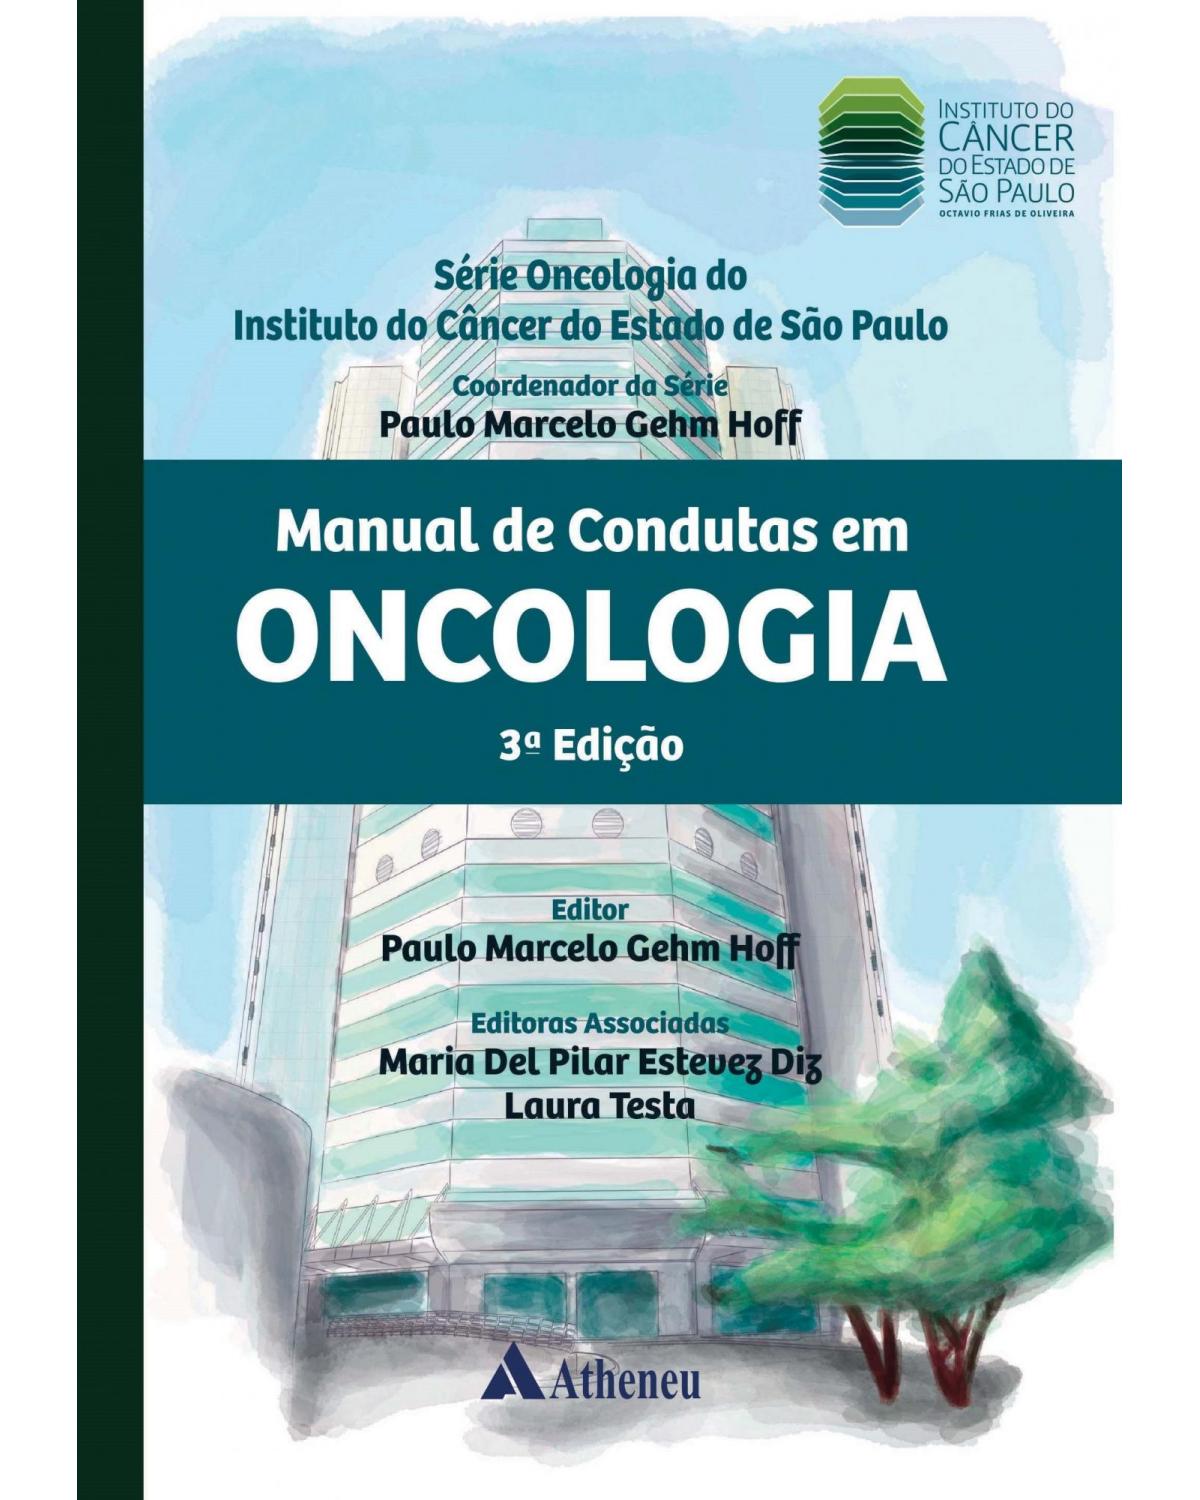 Manual de condutas em oncologia - 3ª Edição | 2018